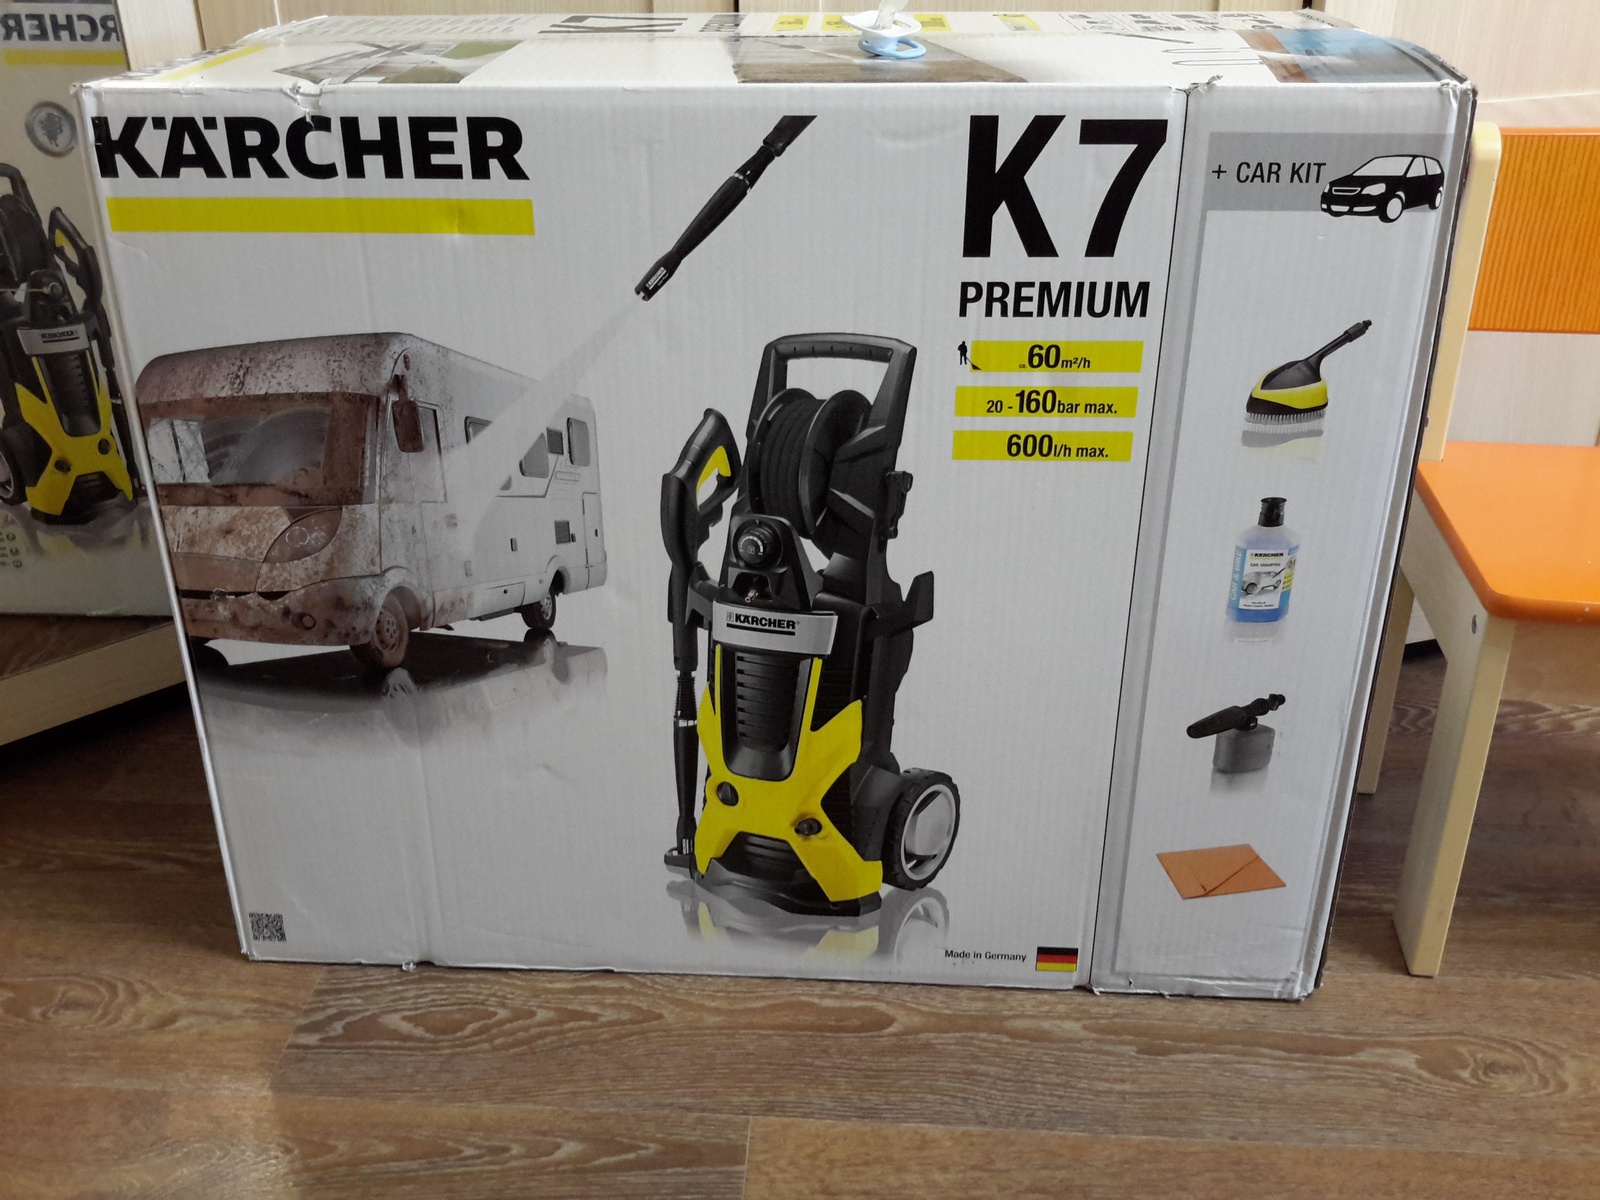 Купить керхер в днс. Керхер к7 Premium. Karcher k7 Premium. K7 Premium Karcher 2015. Karcher k 7.